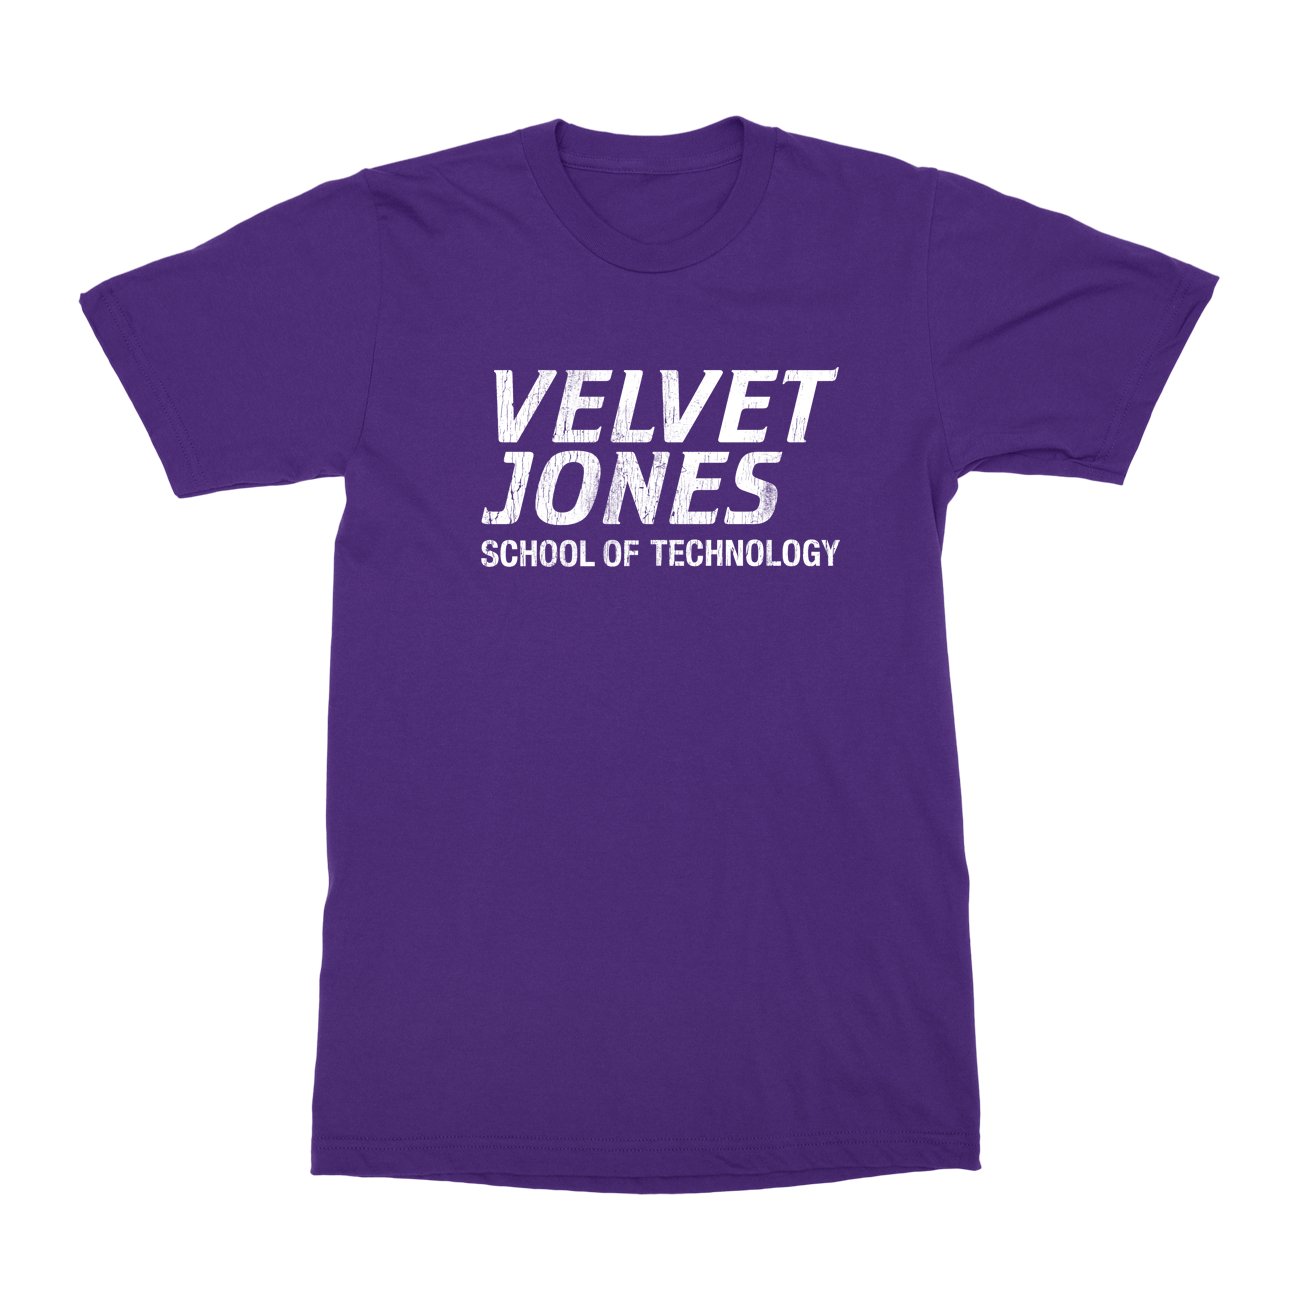 Velvet Jones T-Shirt - Black Cat MFG -